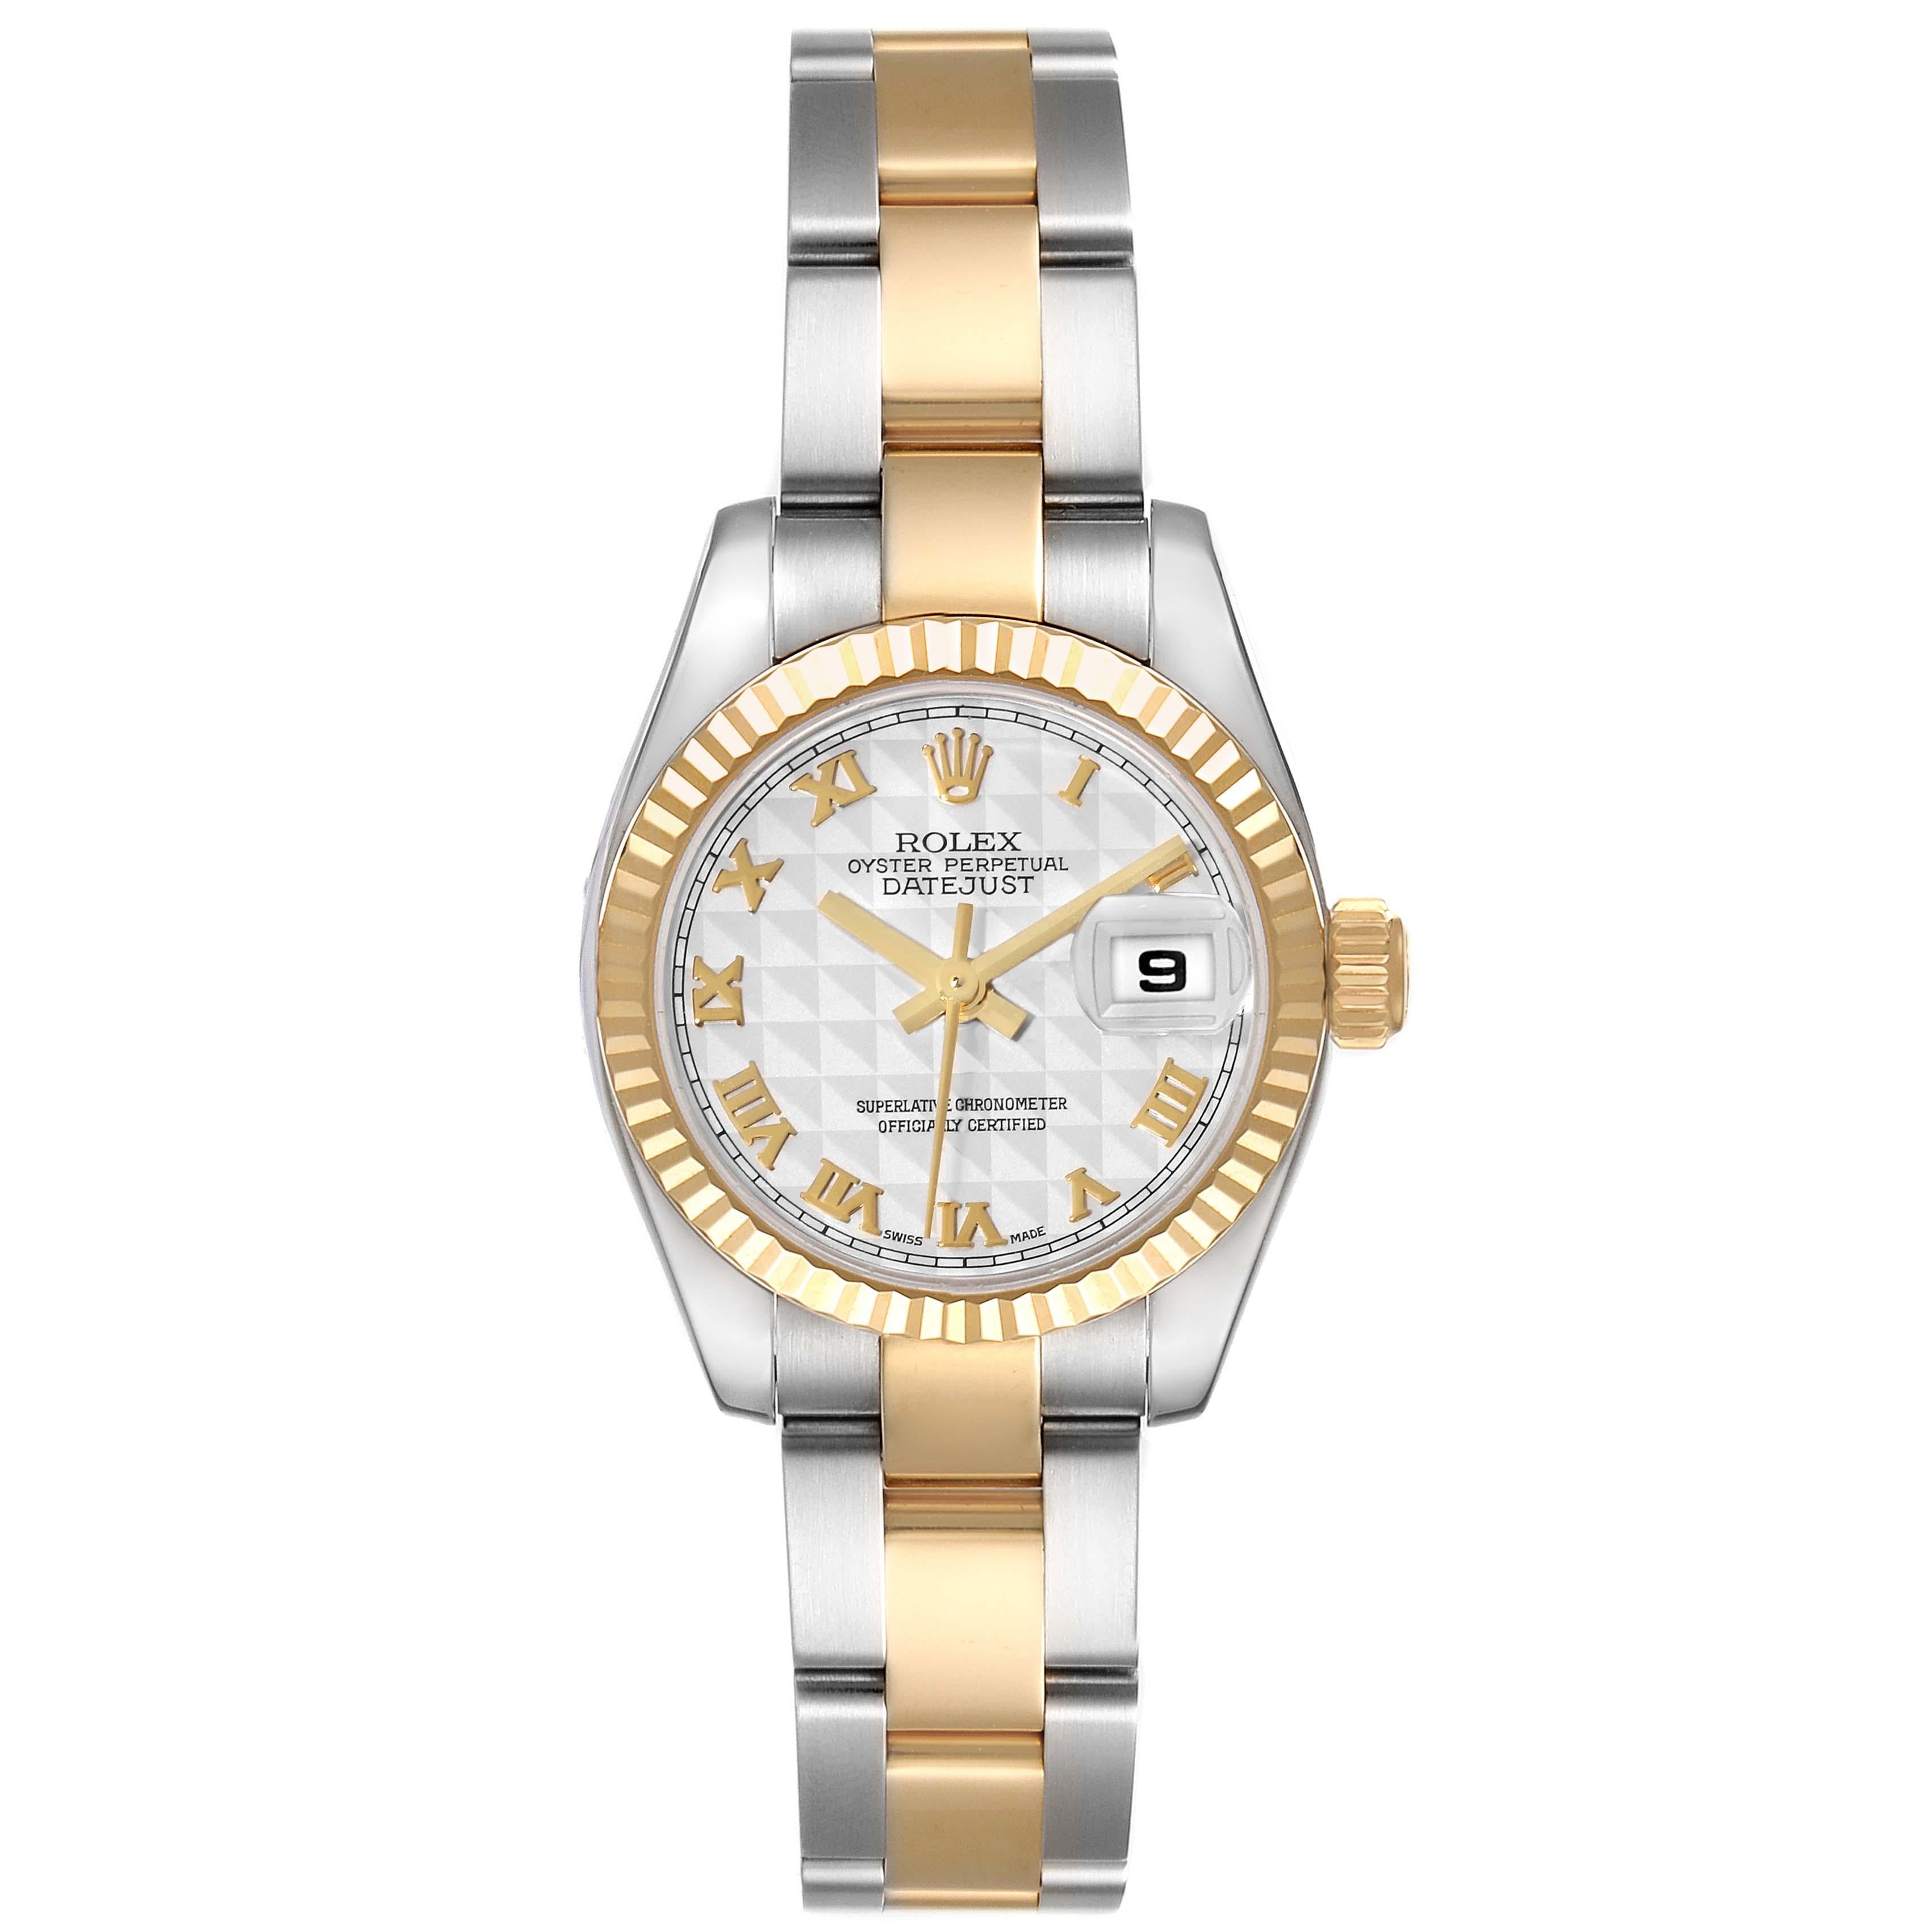 Rolex Datejust Steel Yellow Gold Ivory Pyramid Dial Ladies Watch 179173. Mouvement automatique à remontage automatique, officiellement certifié chronomètre. Boîtier oyster en acier inoxydable de 26 mm de diamètre. Logo Rolex sur une couronne en or